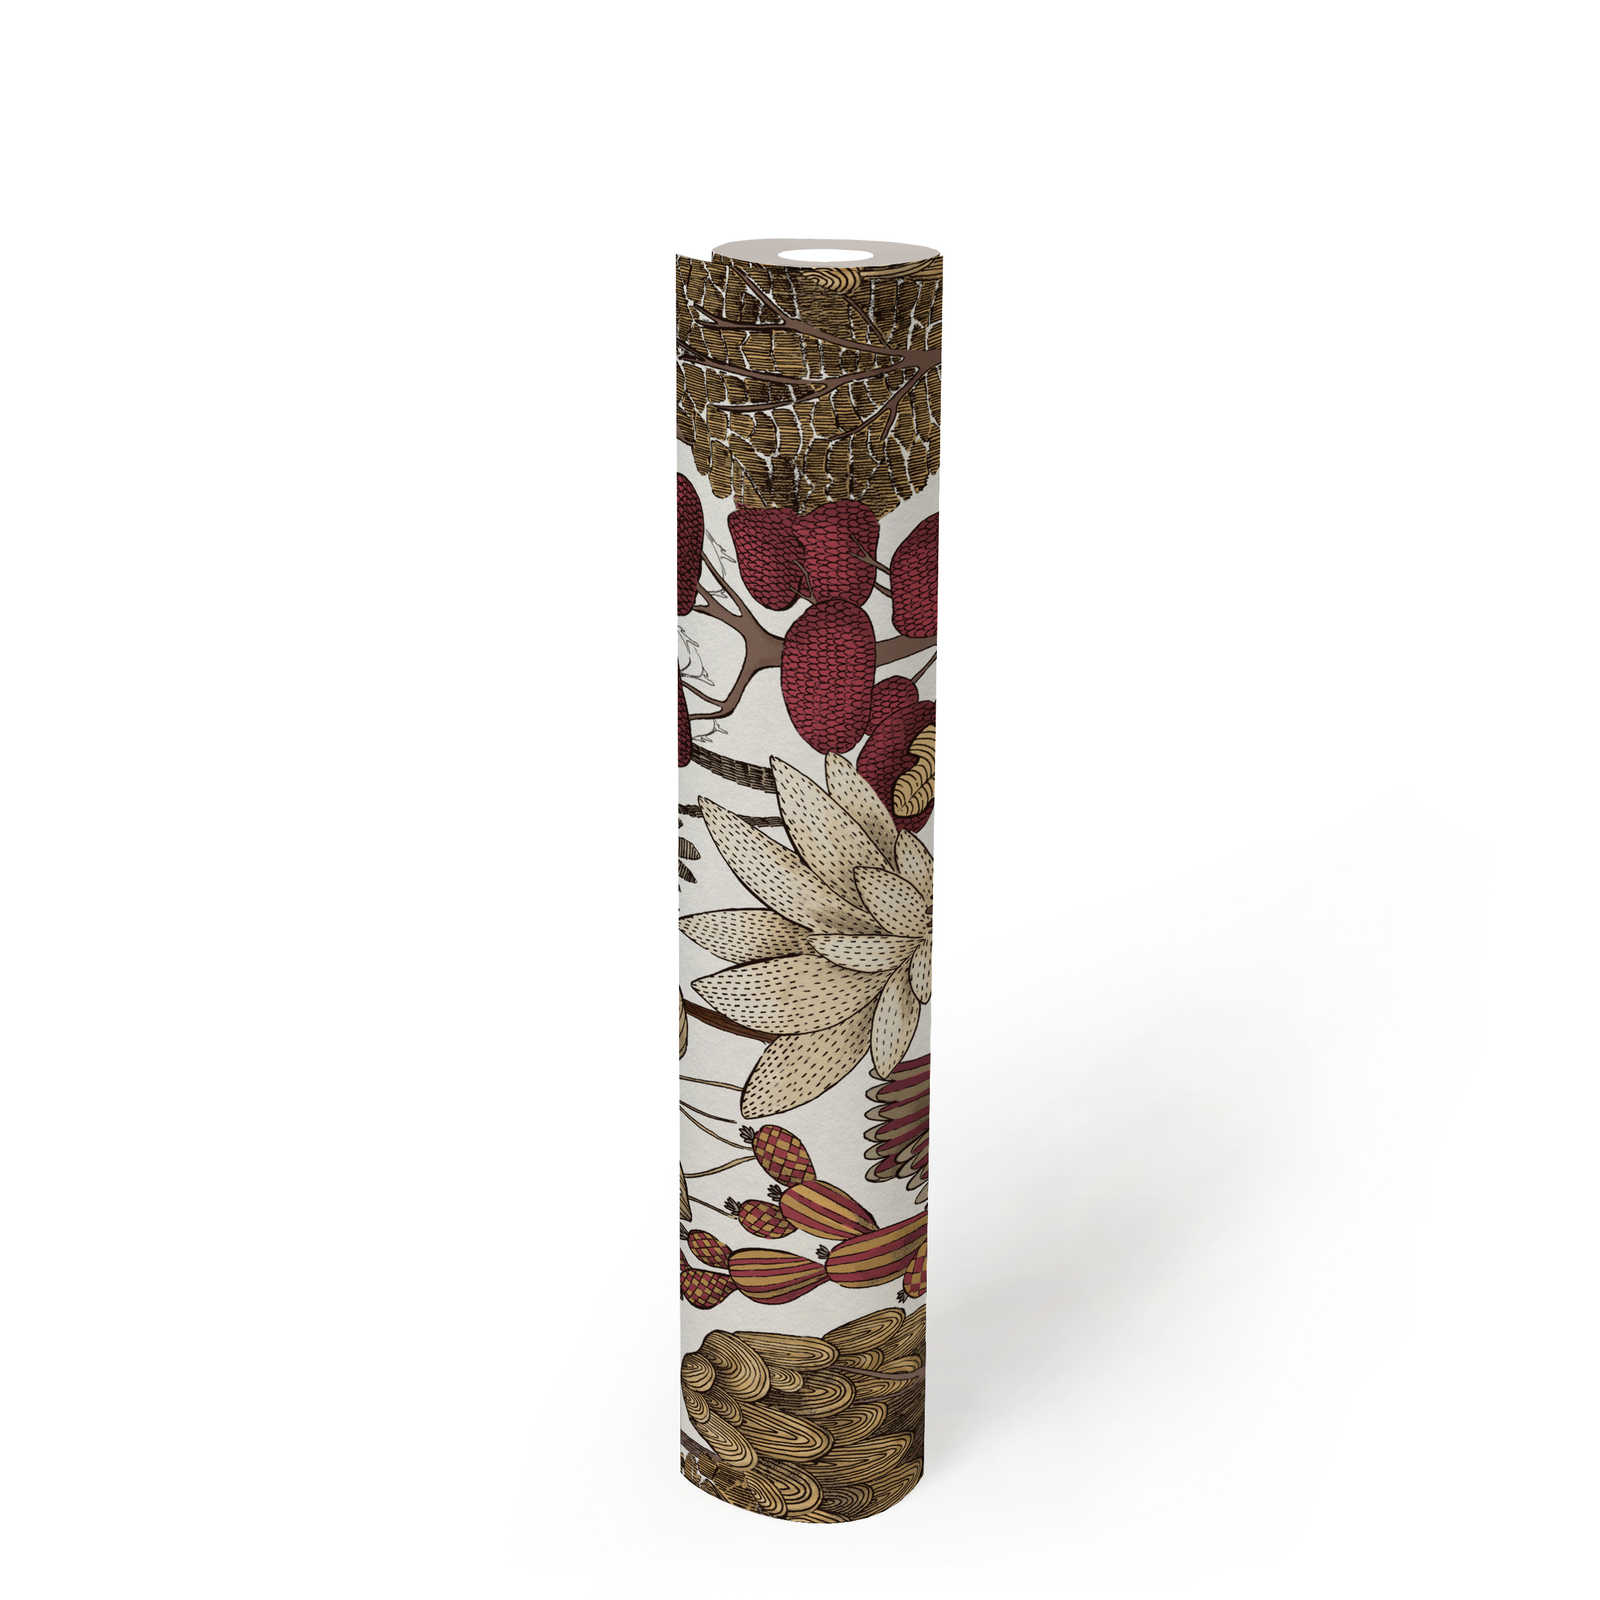             Papel pintado moderno floral con árboles en estilo dibujo - rojo, beige, marrón
        